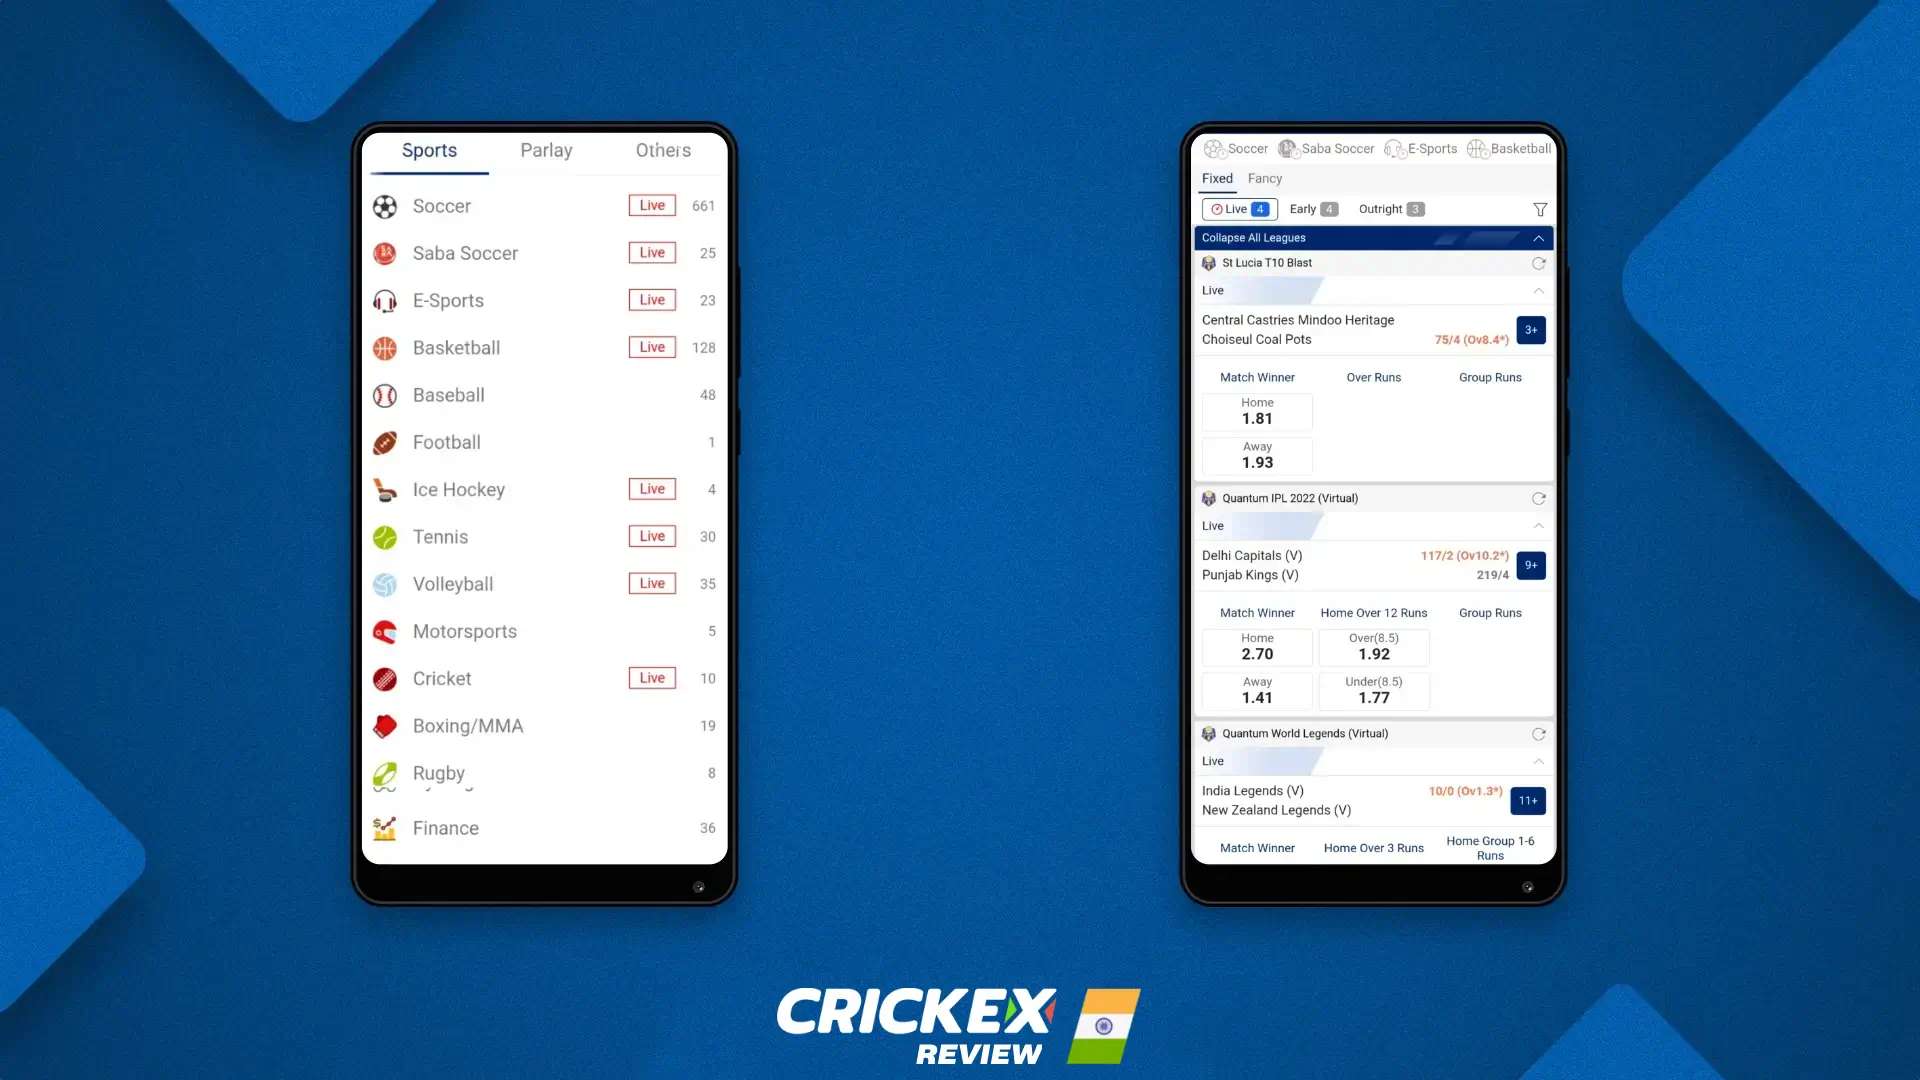 Crickex ऐप विभिन्न प्रकार के खेल प्रदान करता है जिन पर आप दांव लगा सकते हैं, जिसमें क्रिकेट, टेनिस, सॉकर, और बहुत कुछ शामिल हैं